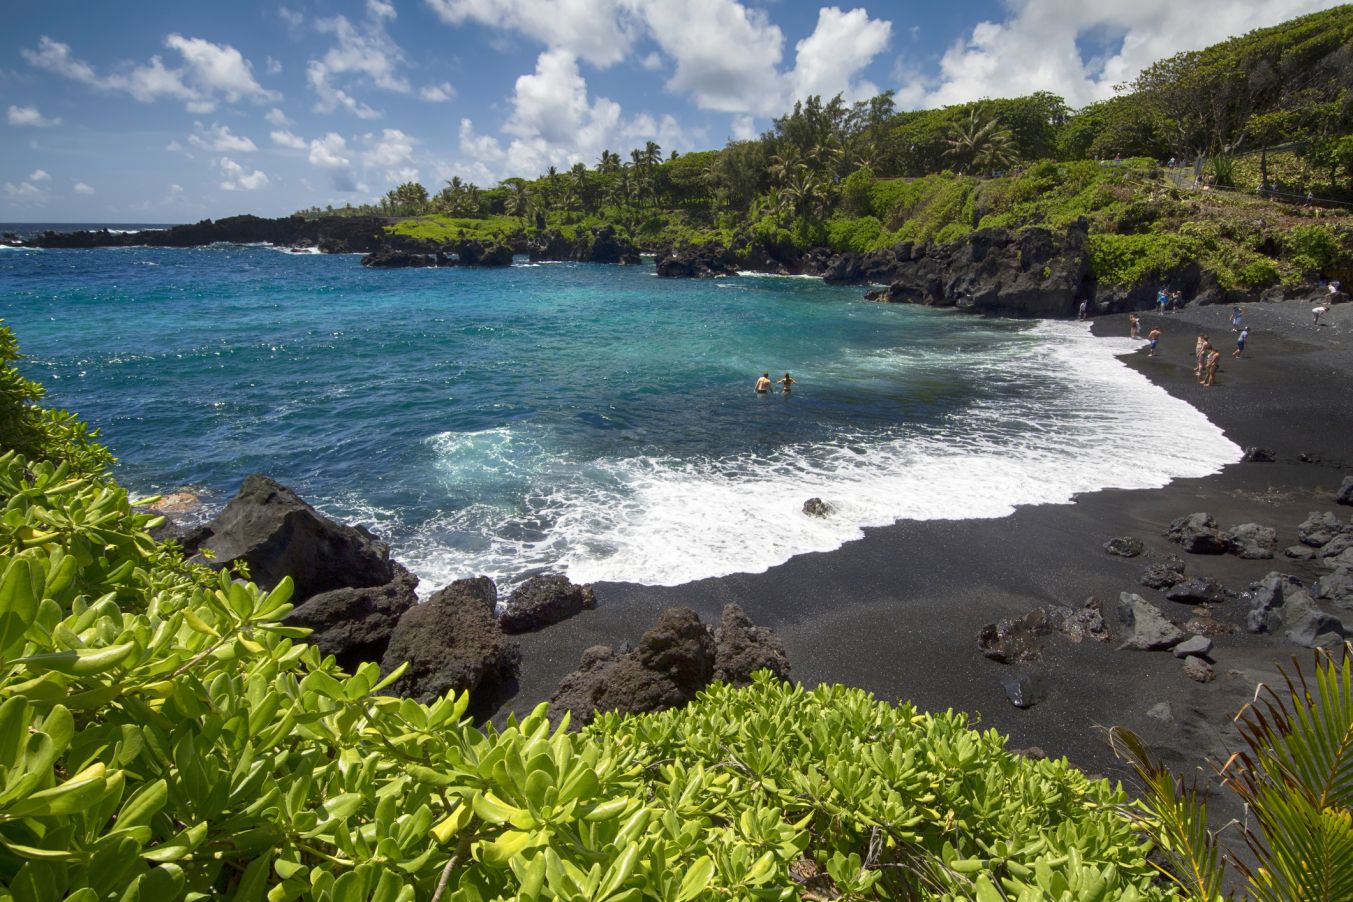 HAWAII – 10 MUST-SEE HAWAI’I BEACHES